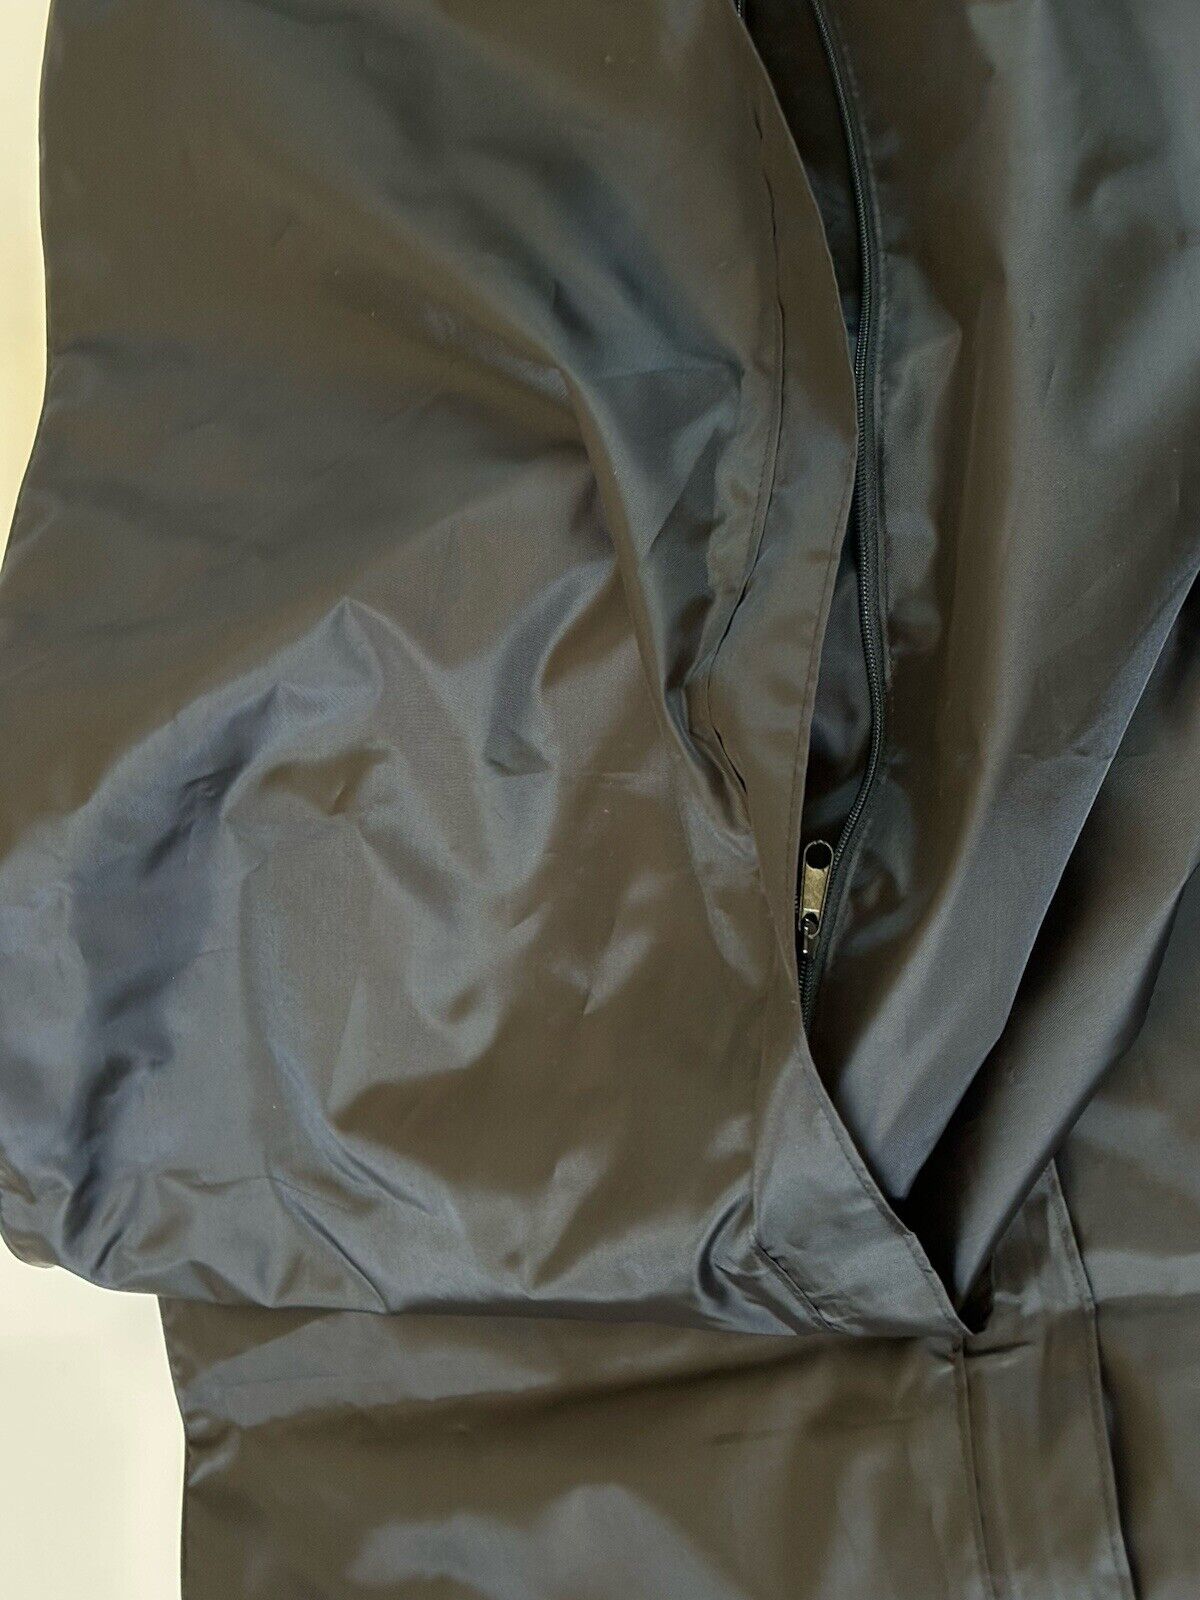 Brand New Versace Suit/Jacket/Vest Foldable Garment Bag Black 66”L x 23.5”W